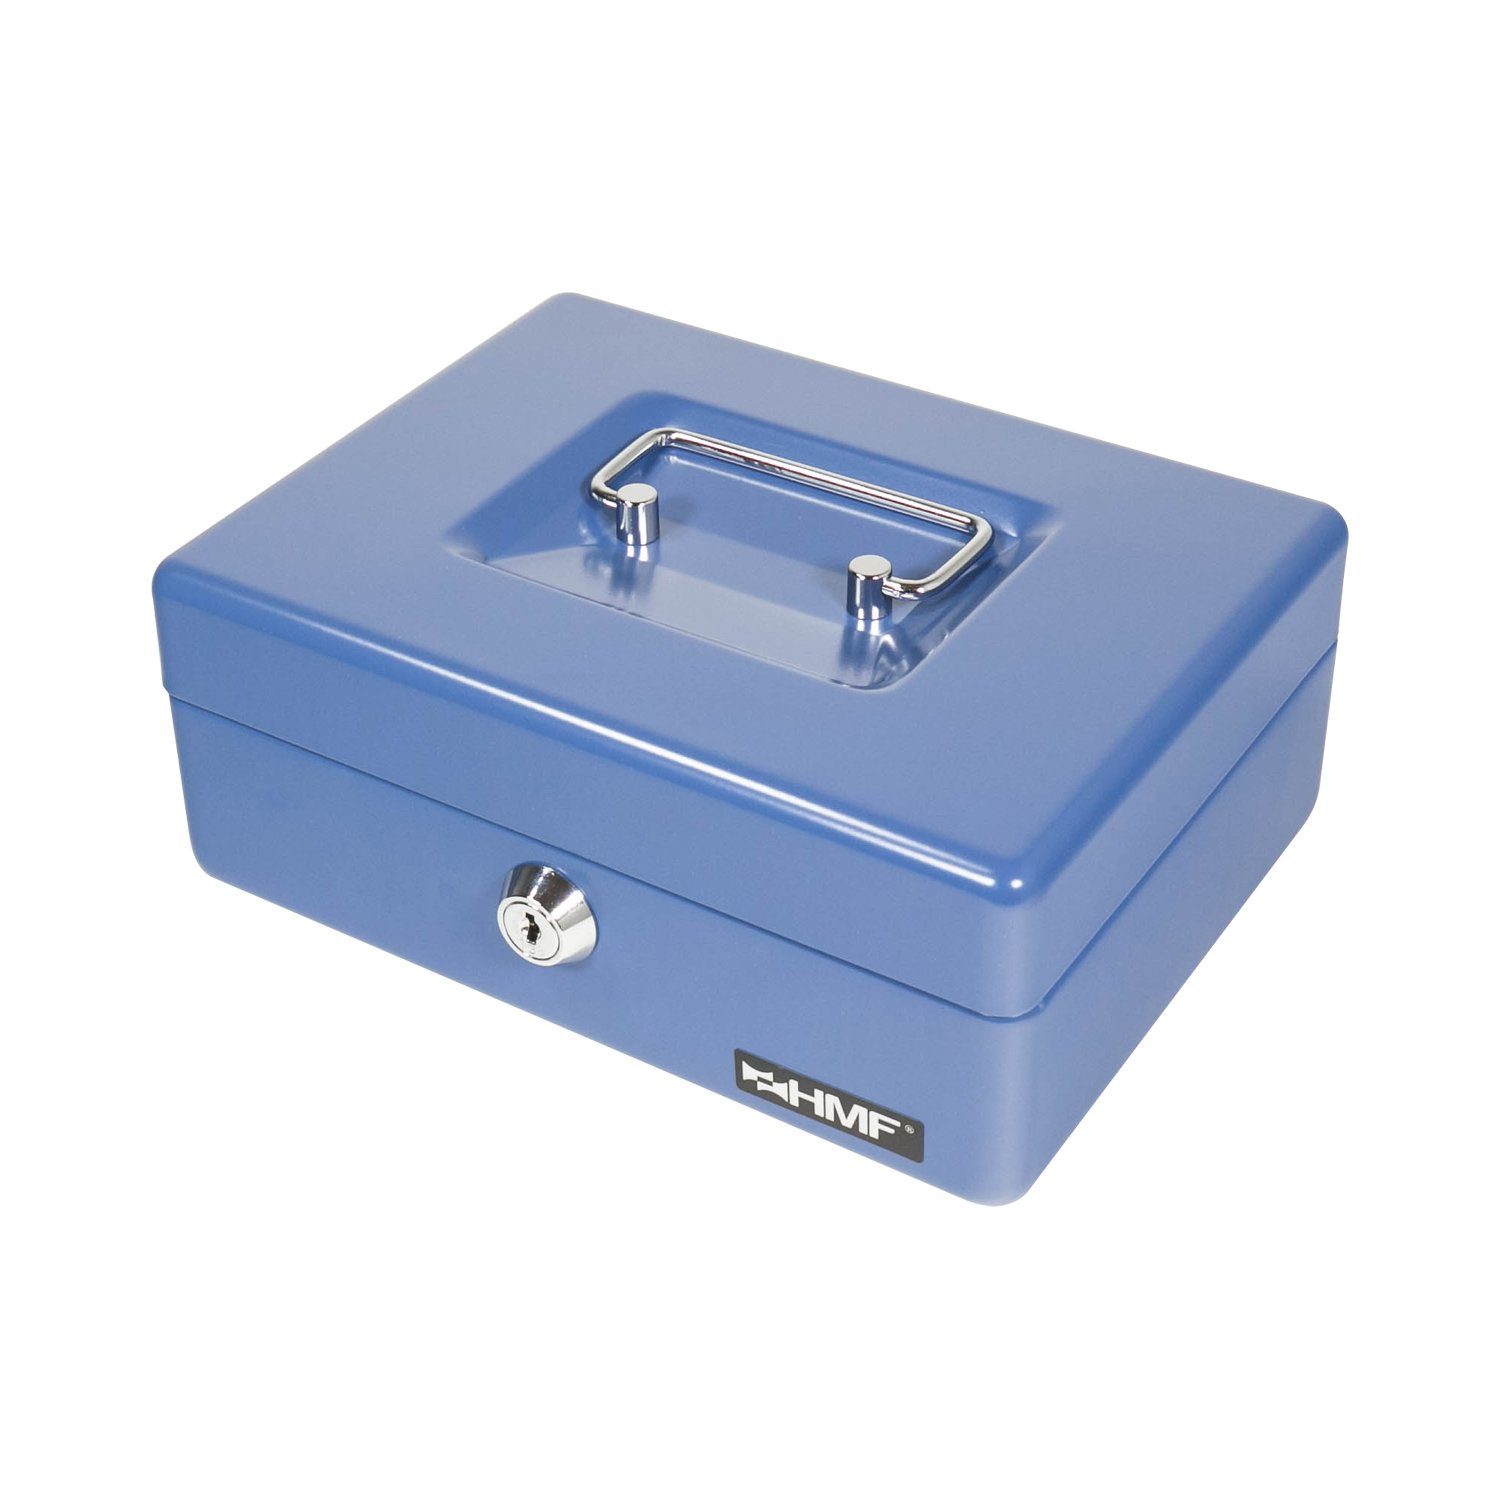 HMF Geldkassette Abschließbare Bargeldkasse mit Münzzählbrett, mit robuste Schlüssel, Geldbox 20x16x9 blau cm